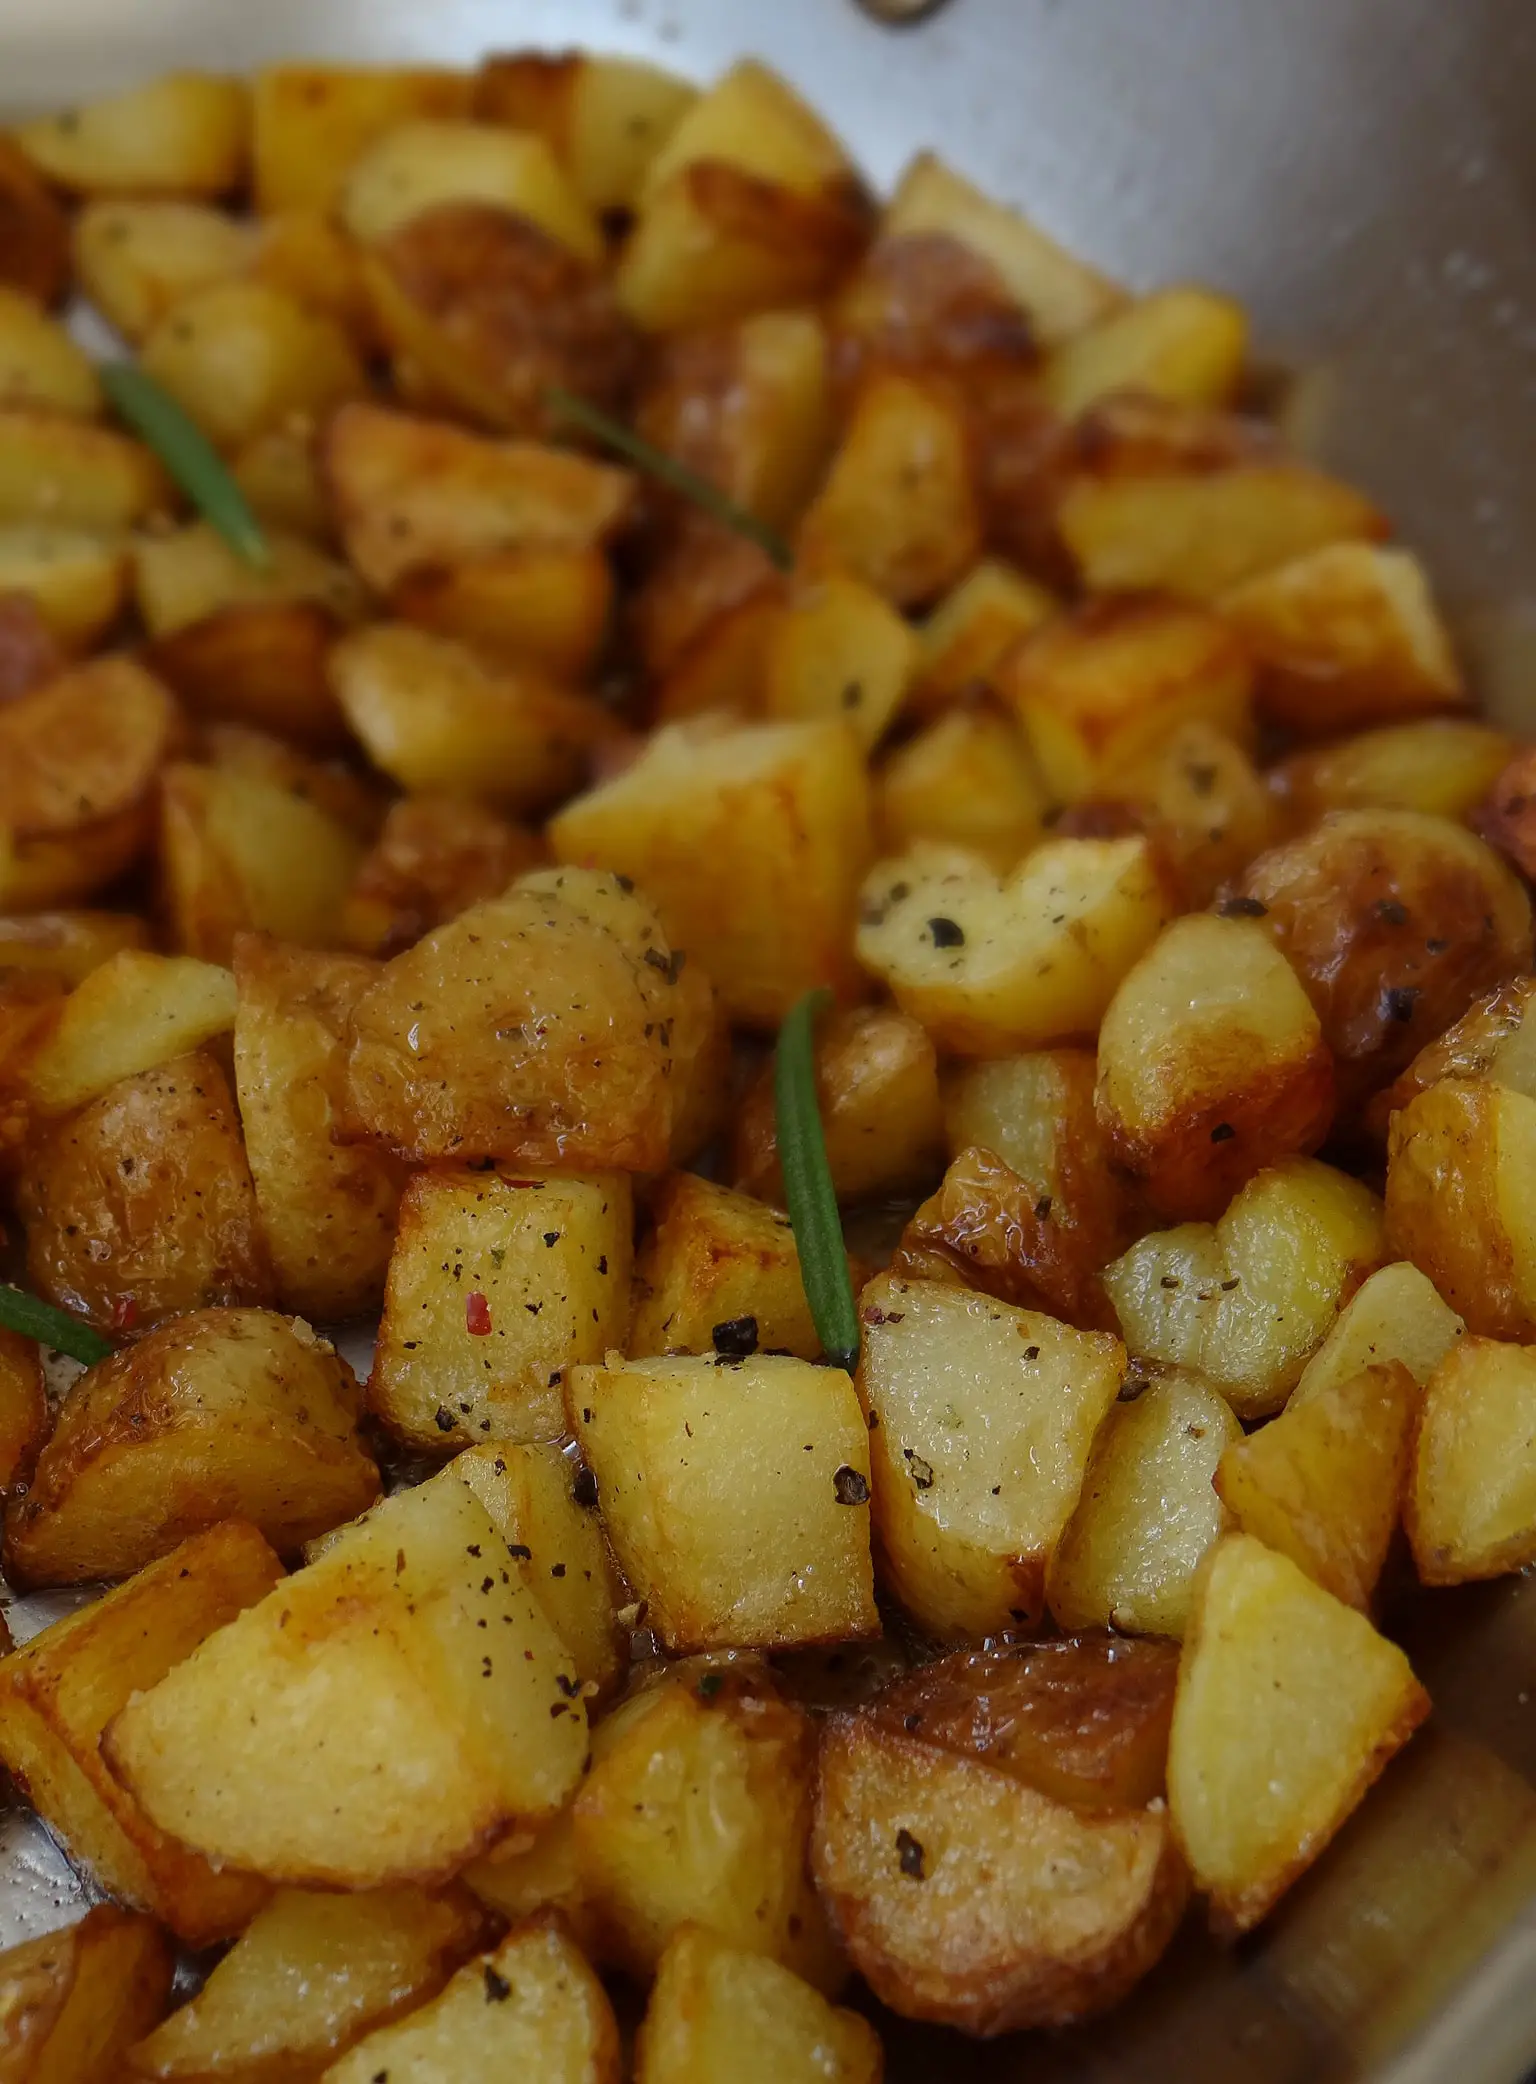 breakfast potatoes